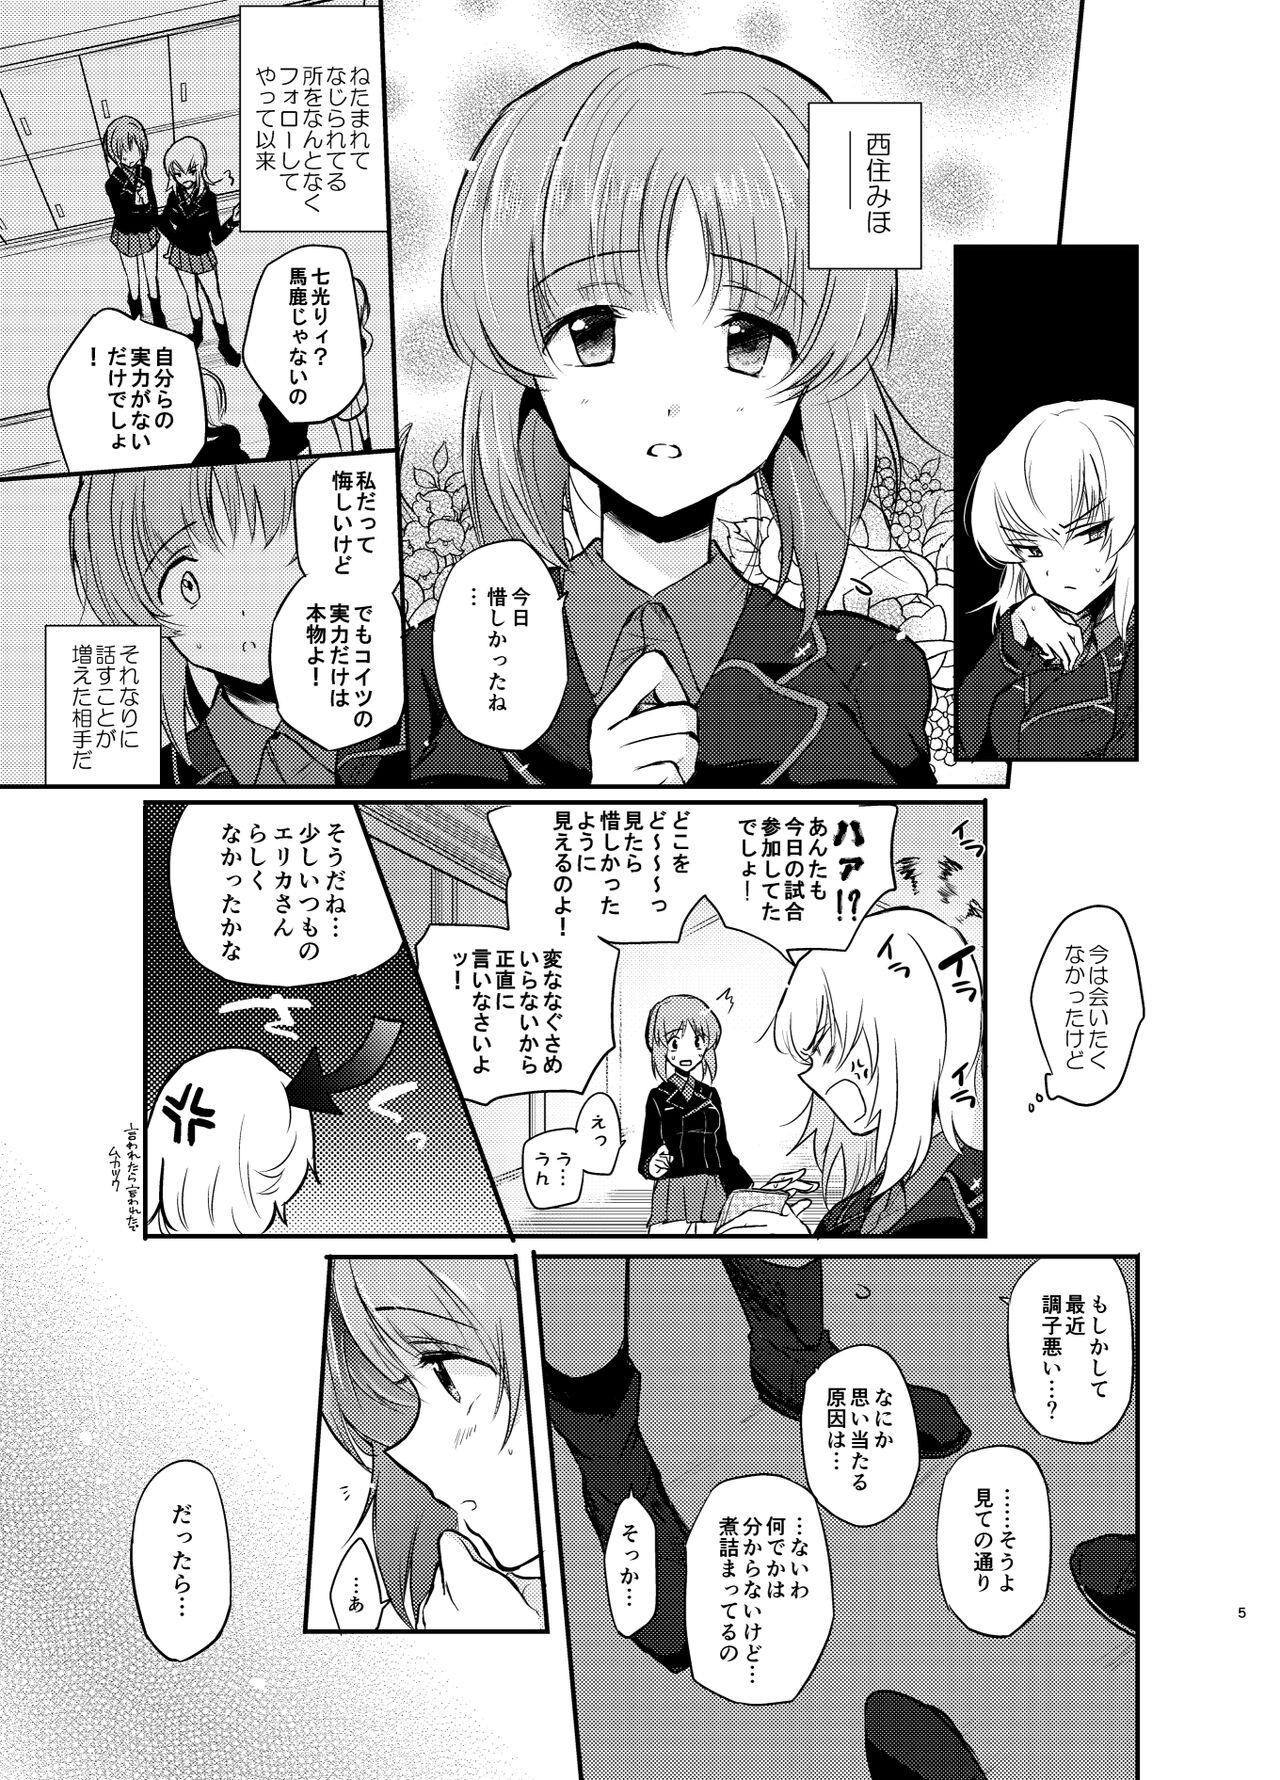 Sologirl Nishizumi Refre - Girls und panzer Stranger - Page 5